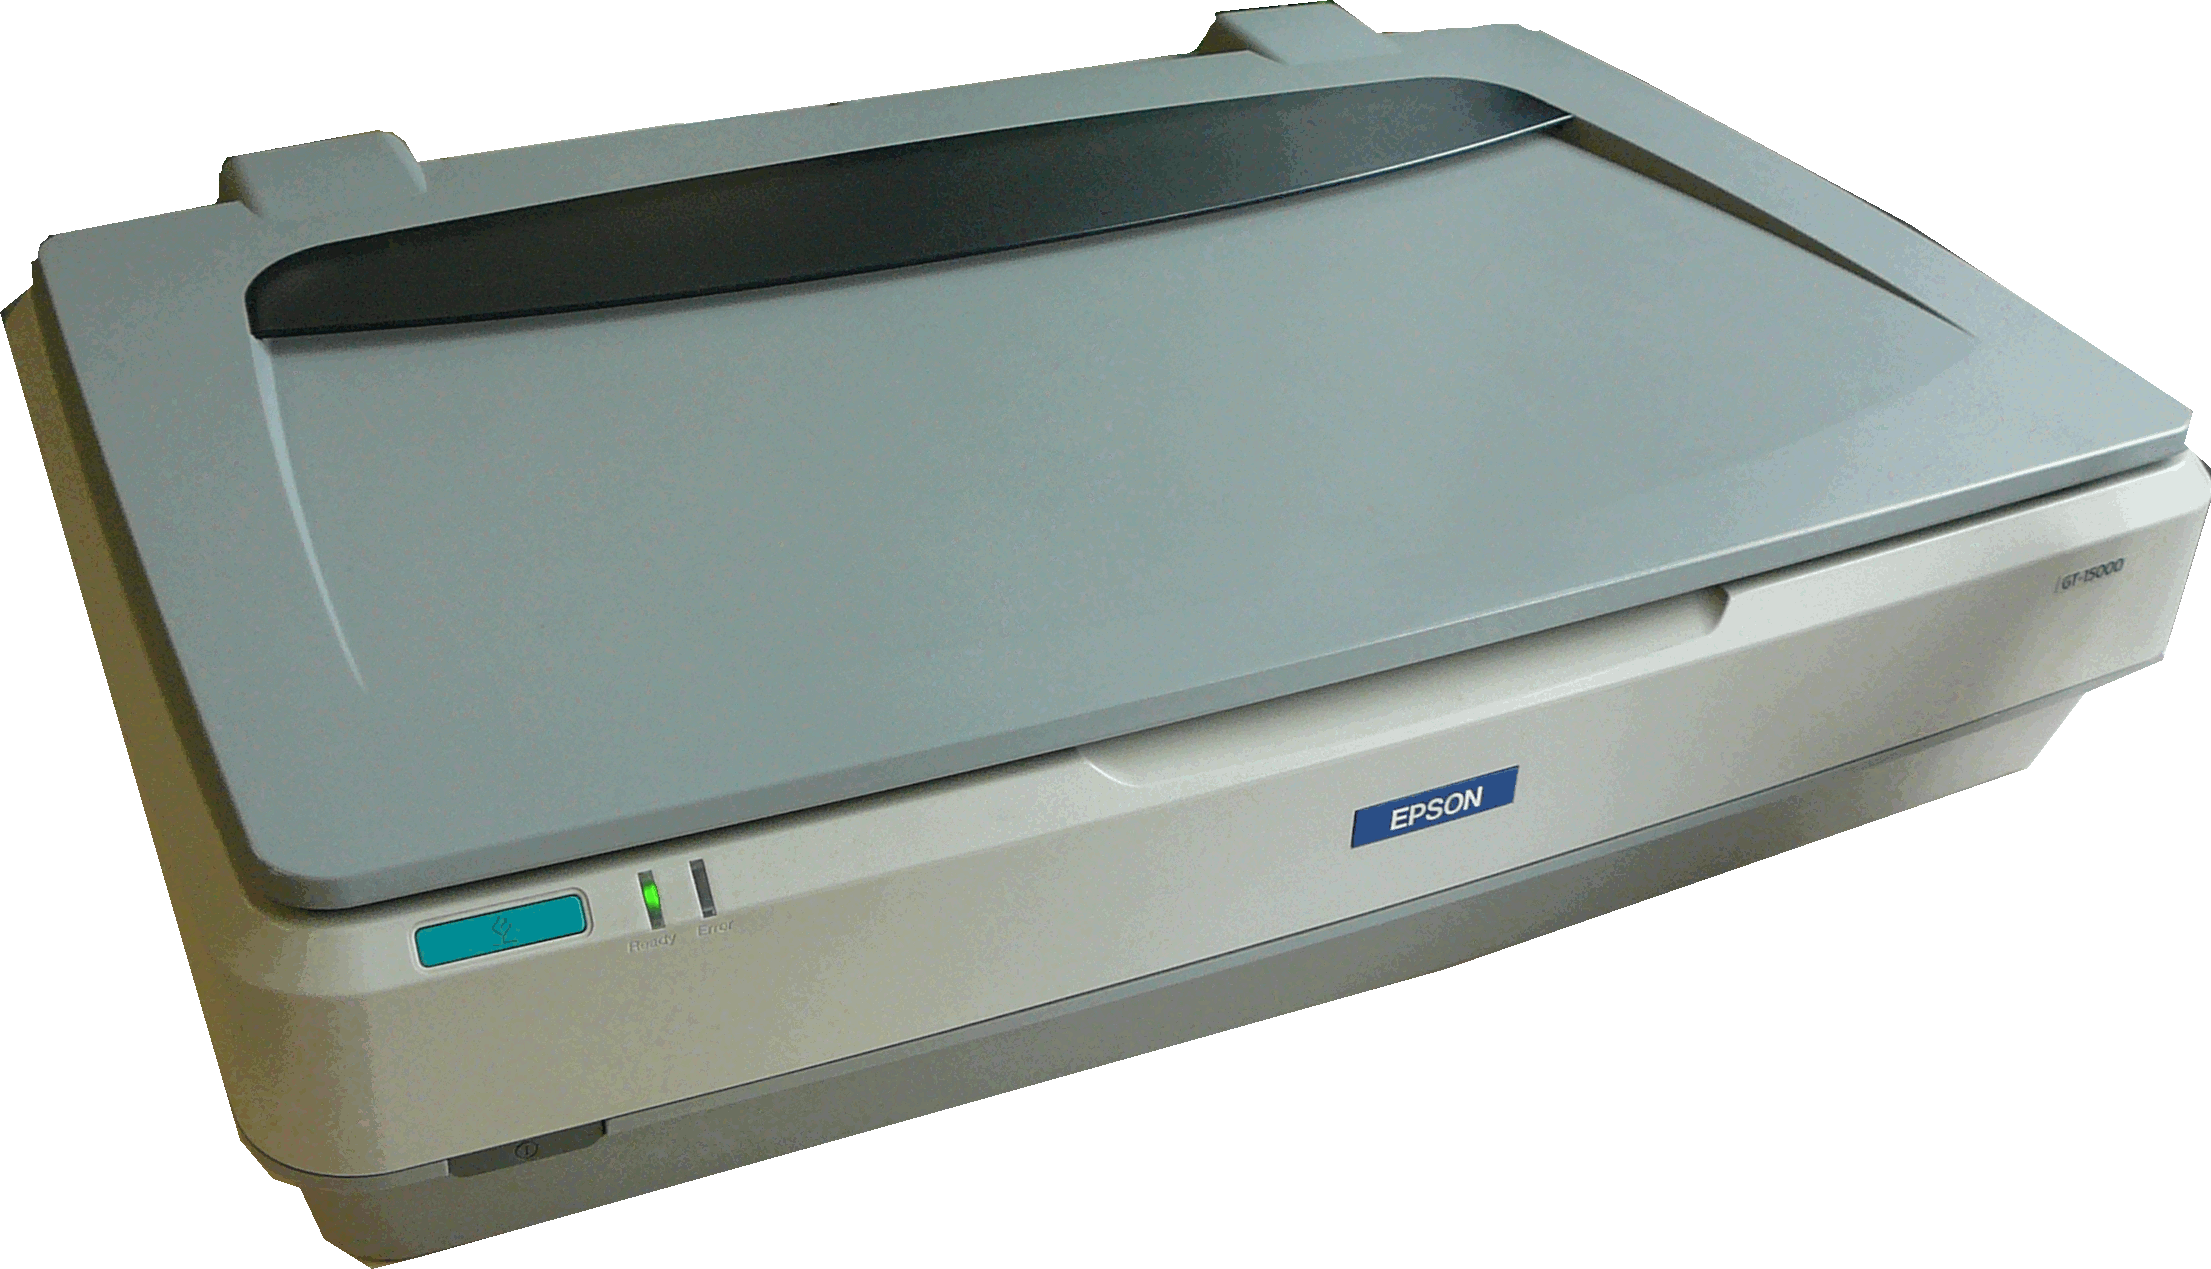 Flat bed scanner